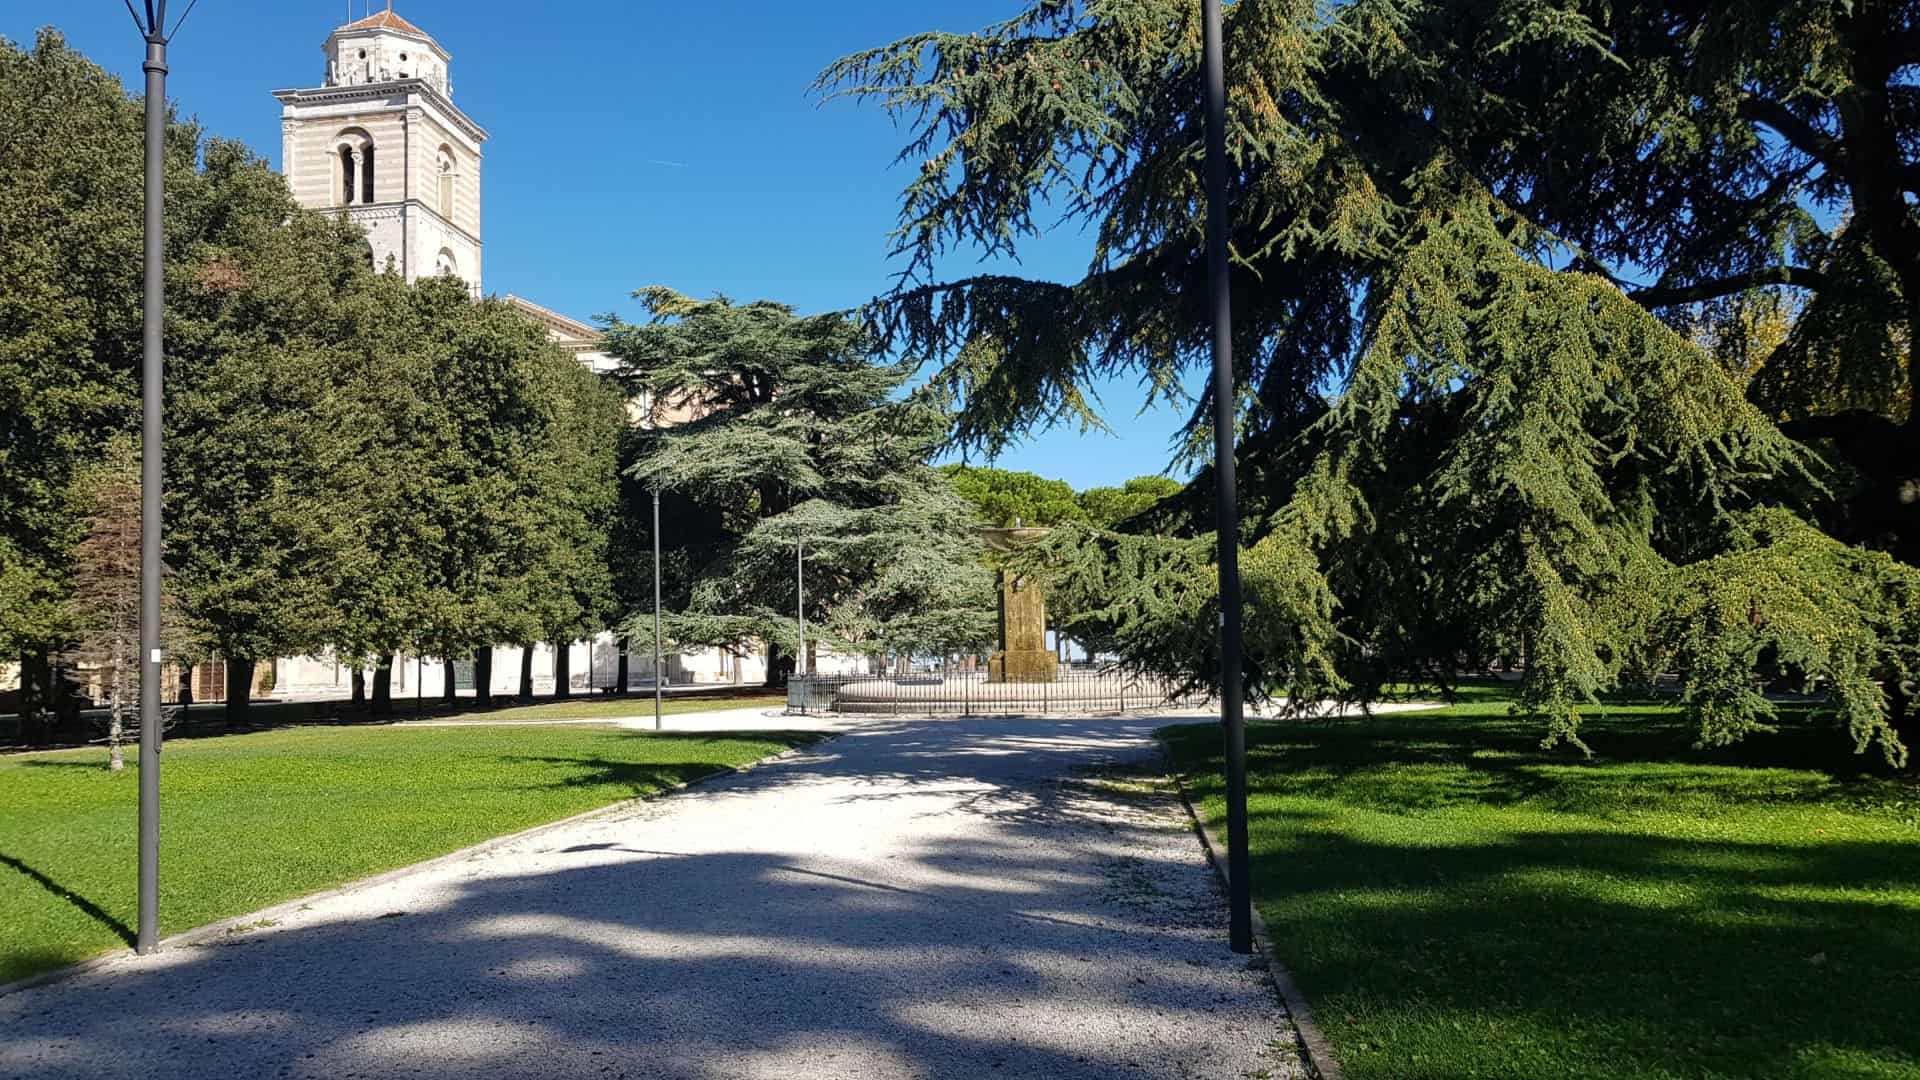 The Grifalco park in Fermo (image source: educattivo)